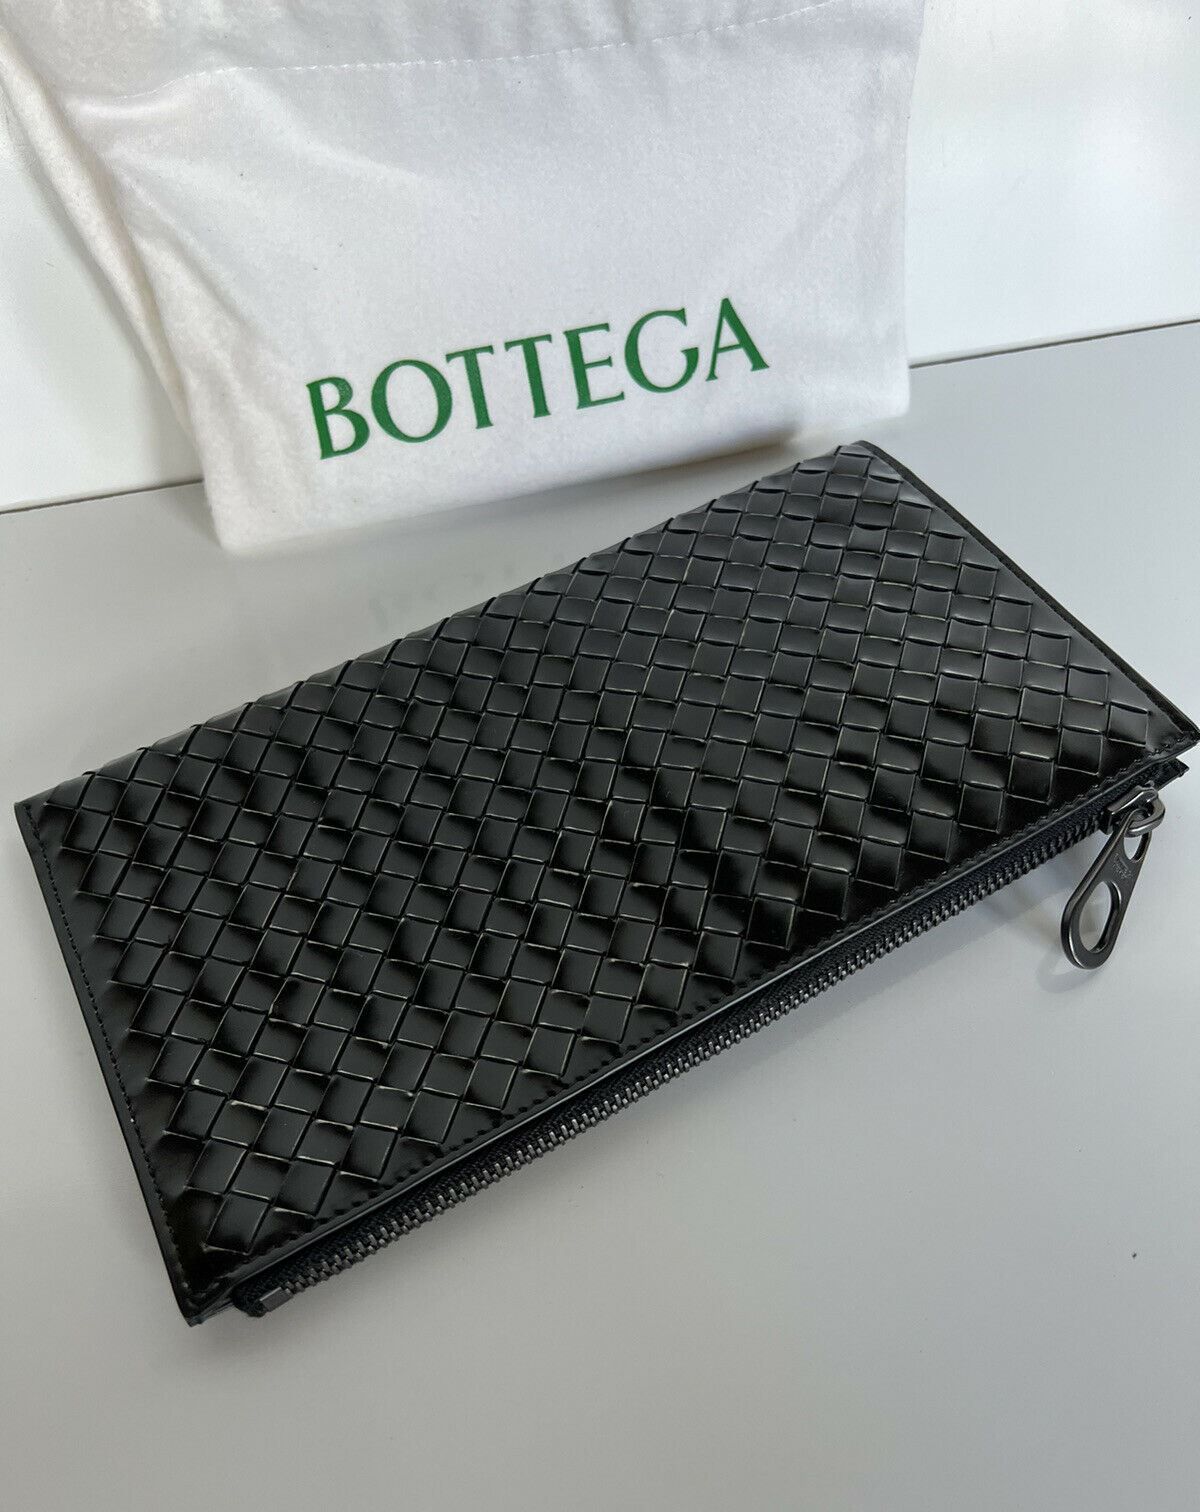 NWT $940 Bottega Veneta Мужской чехол из телячьей кожи с металлической щеткой, черный/серебристый 506323 